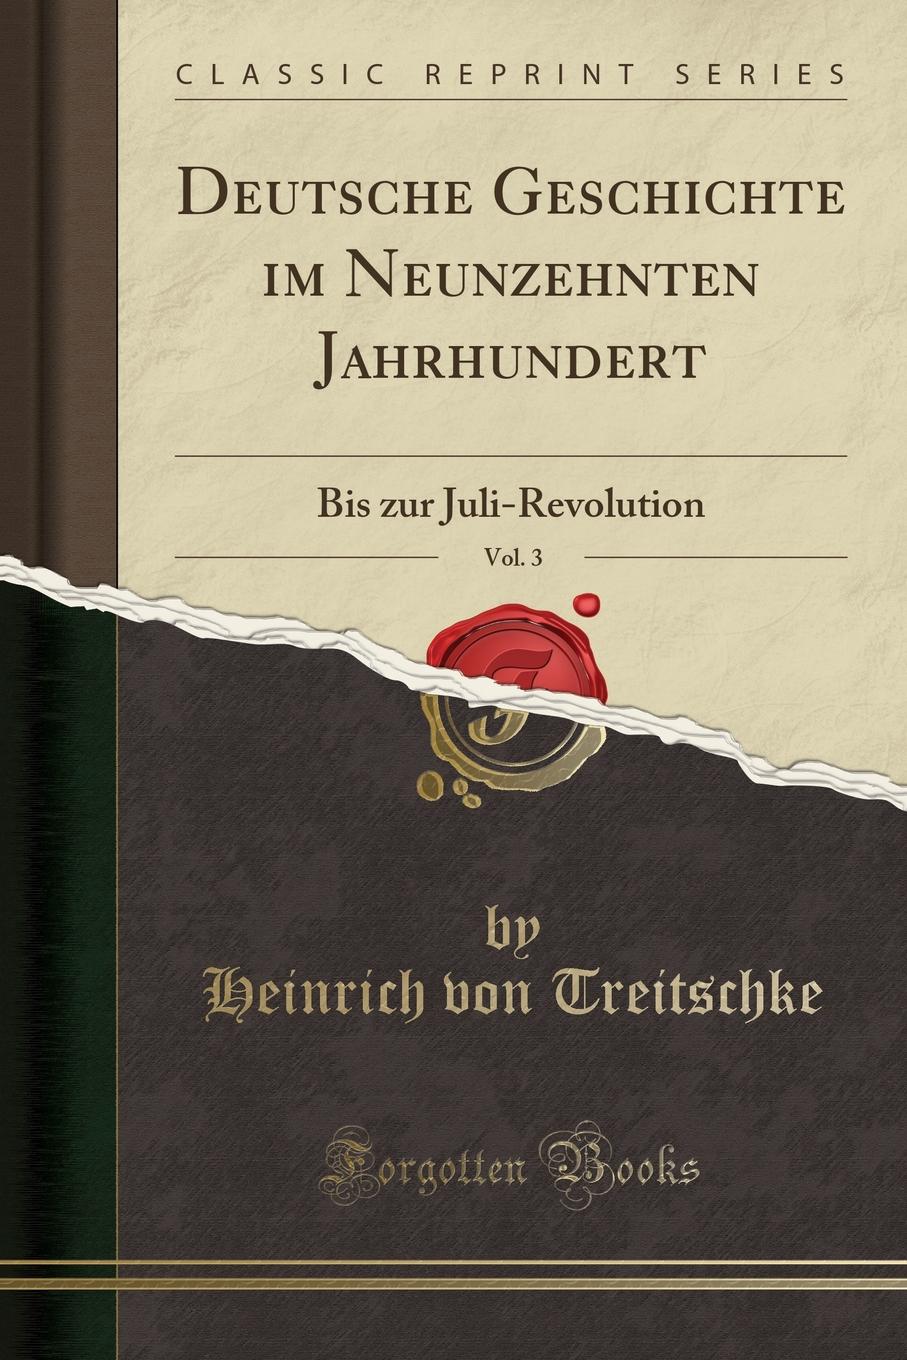 Deutsche Geschichte im Neunzehnten Jahrhundert, Vol. 3. Bis zur Juli-Revolution (Classic Reprint)